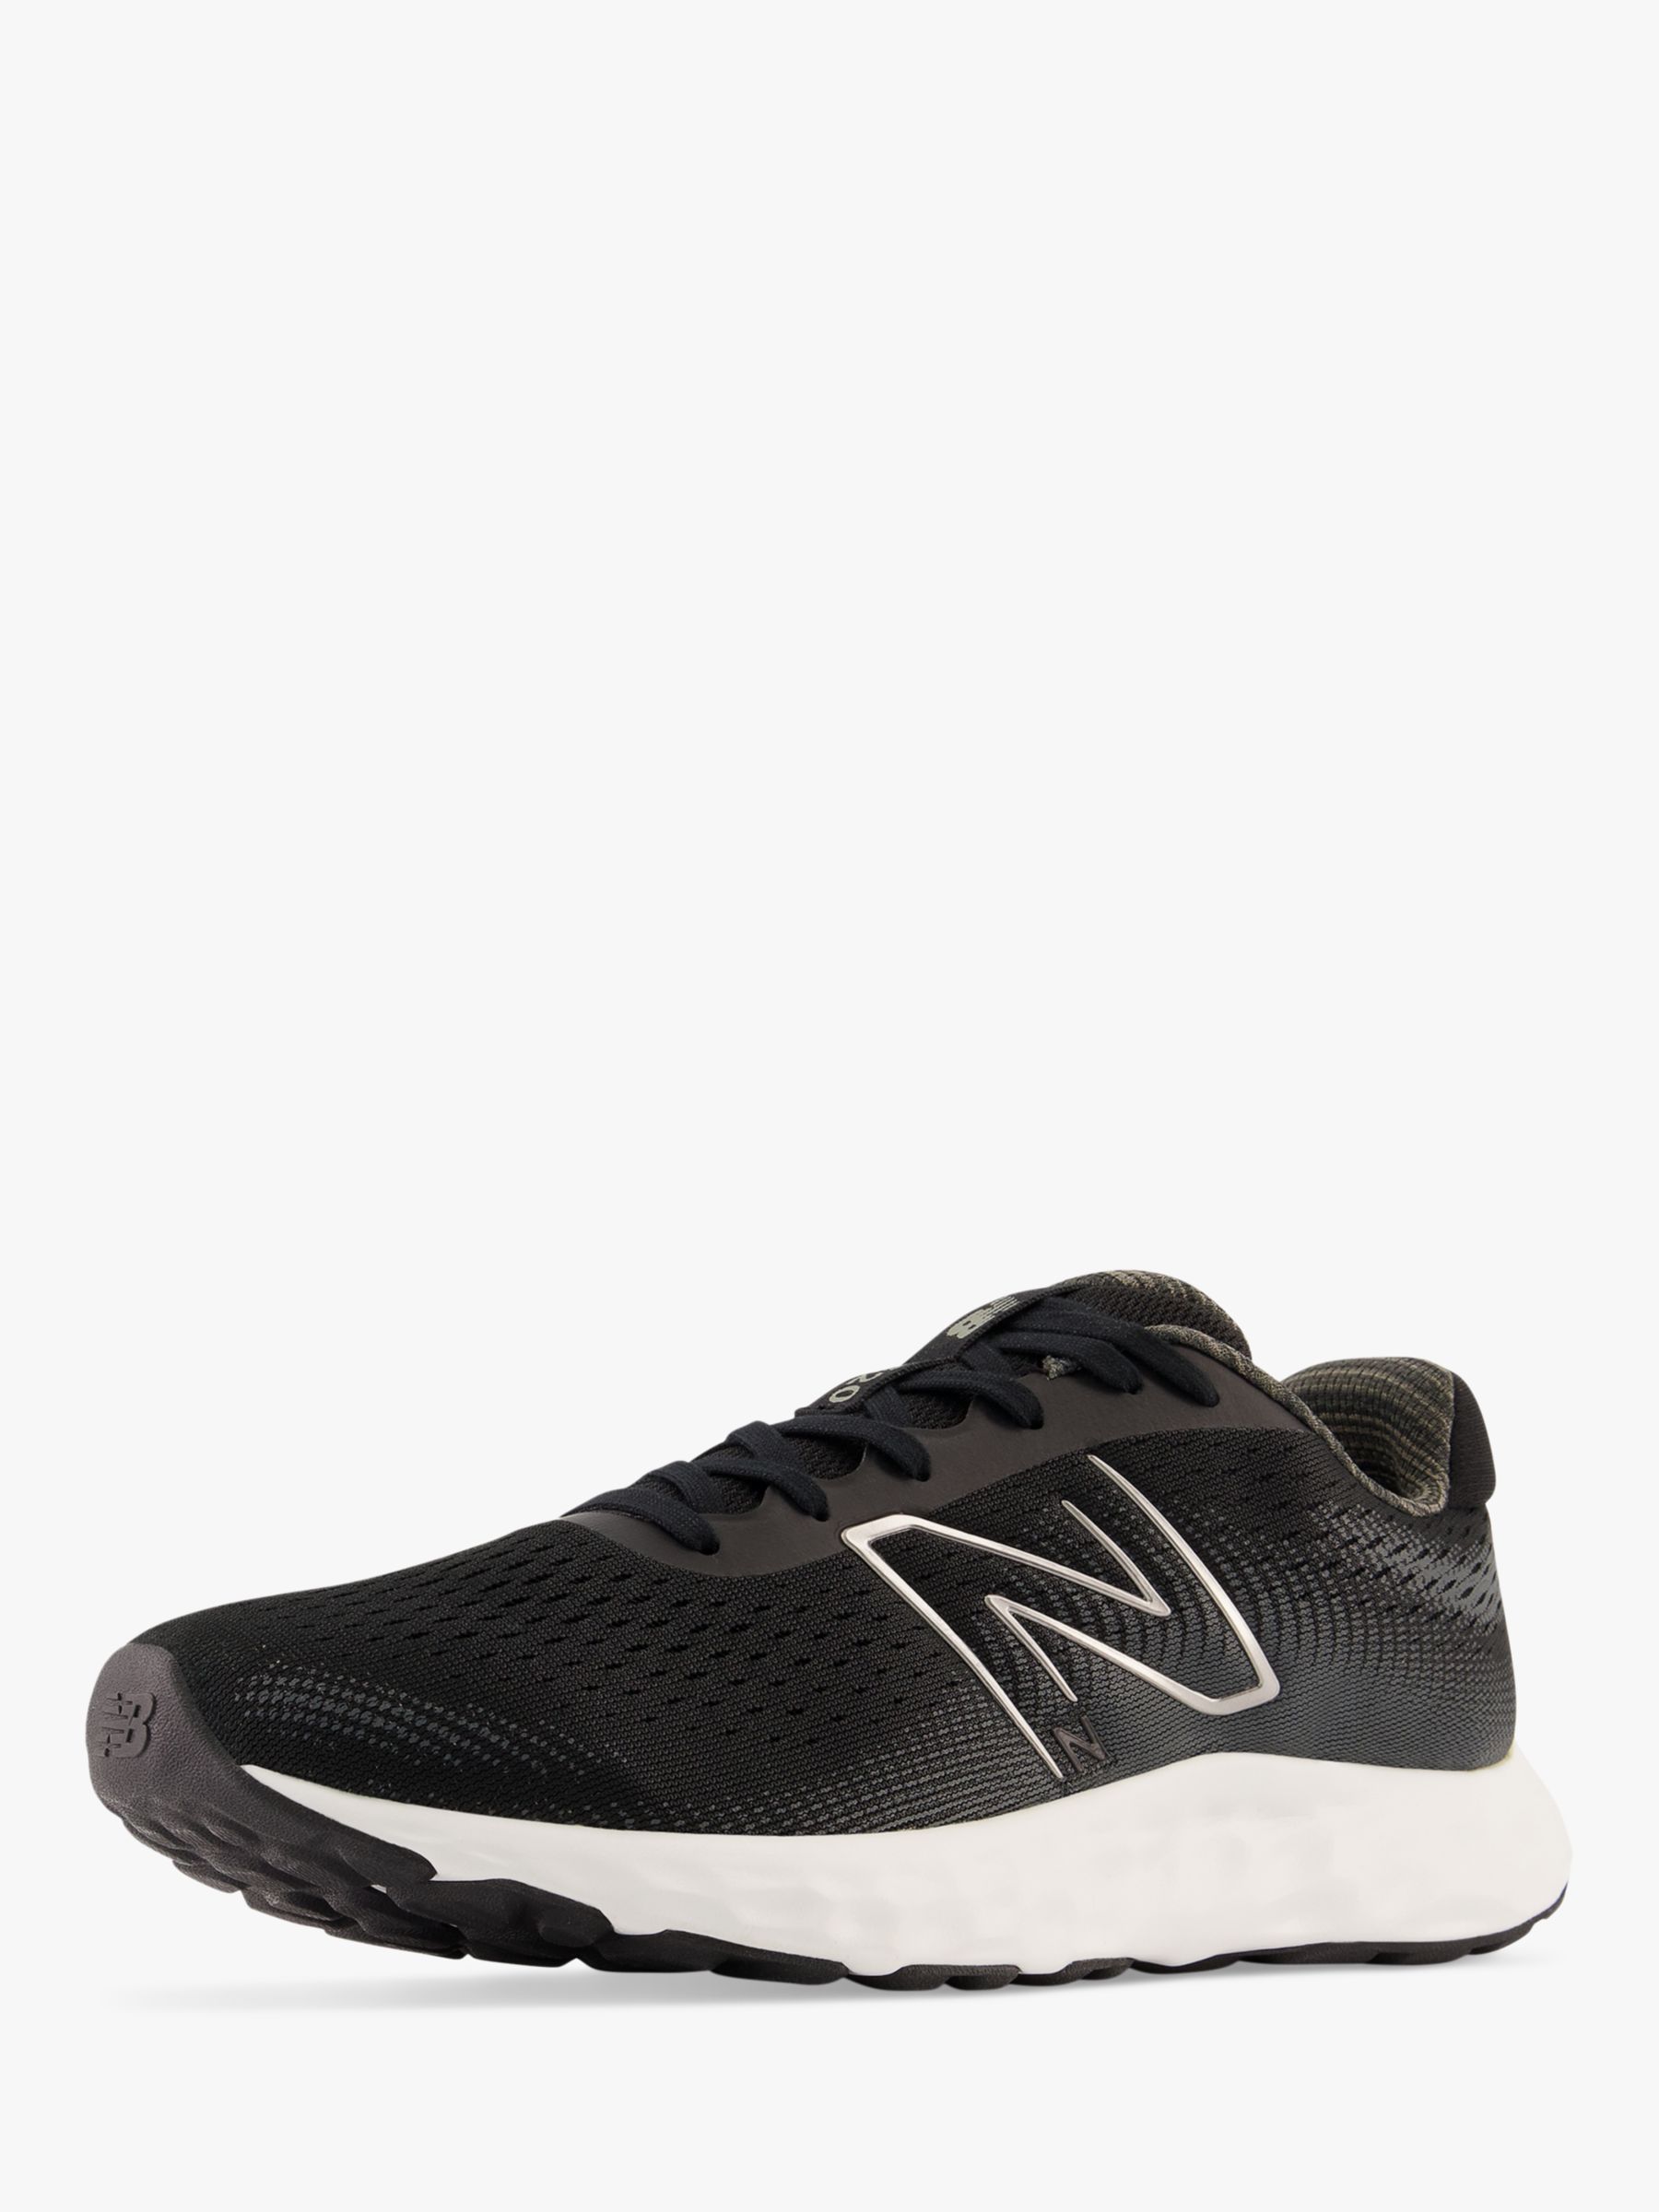 New Balance 520v8 Men's Running Shoes, Black/White, 9